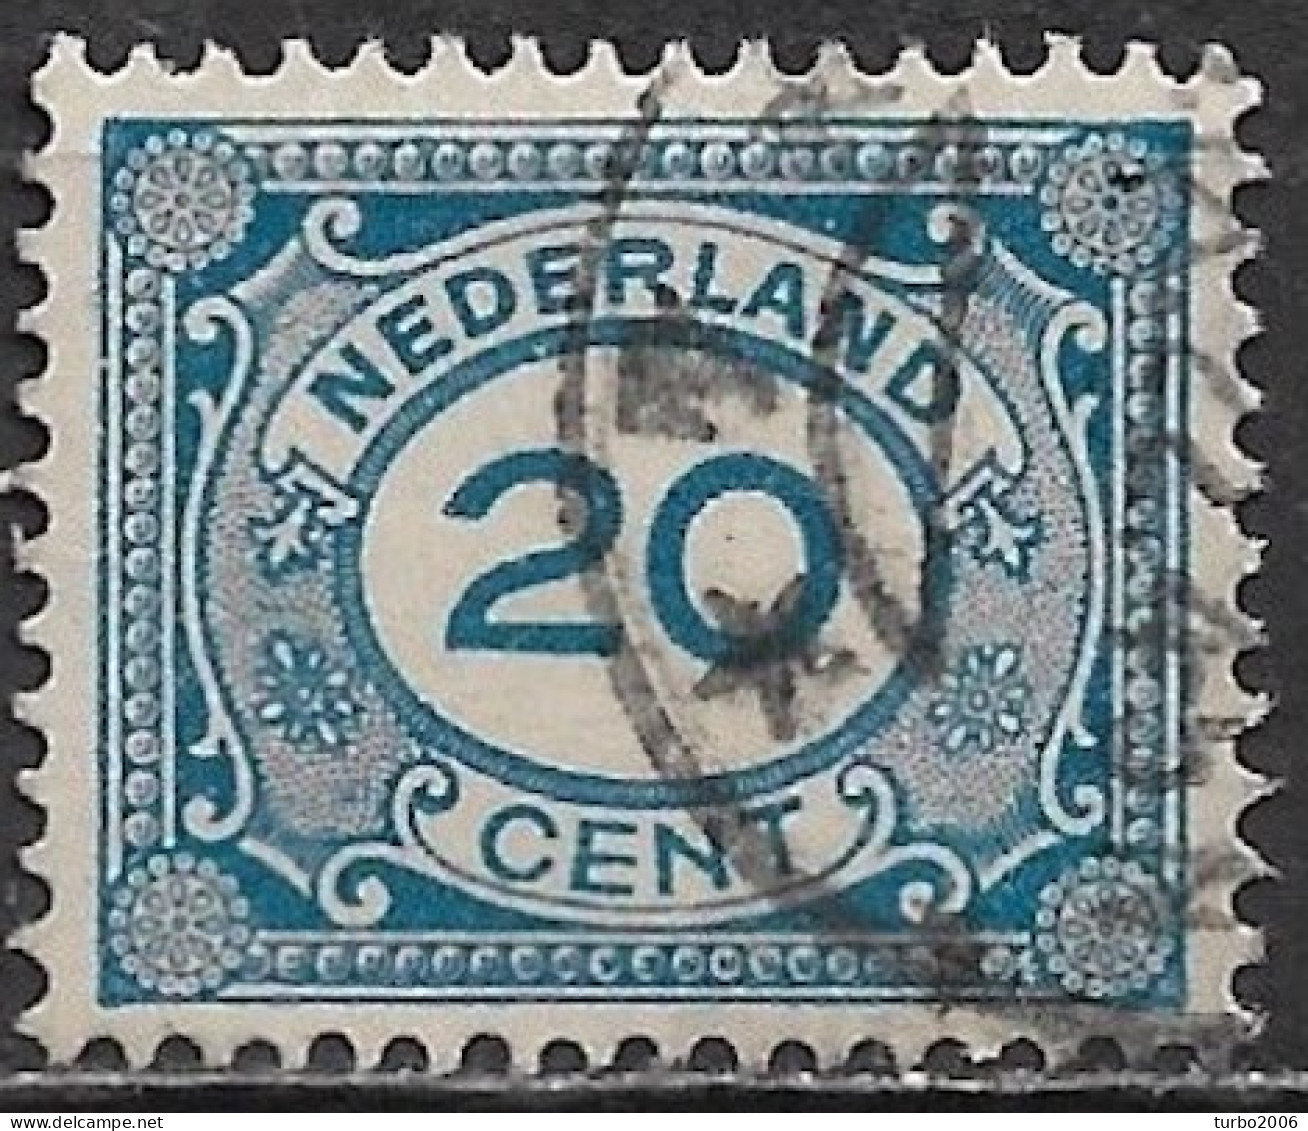 Plaatfout Breukje In De Kaderlijn Linksboven In 1921-22 Cijferzegels 20 Cent Blauw NVPH 109 PM 4 Leidraad 2 - Errors & Oddities